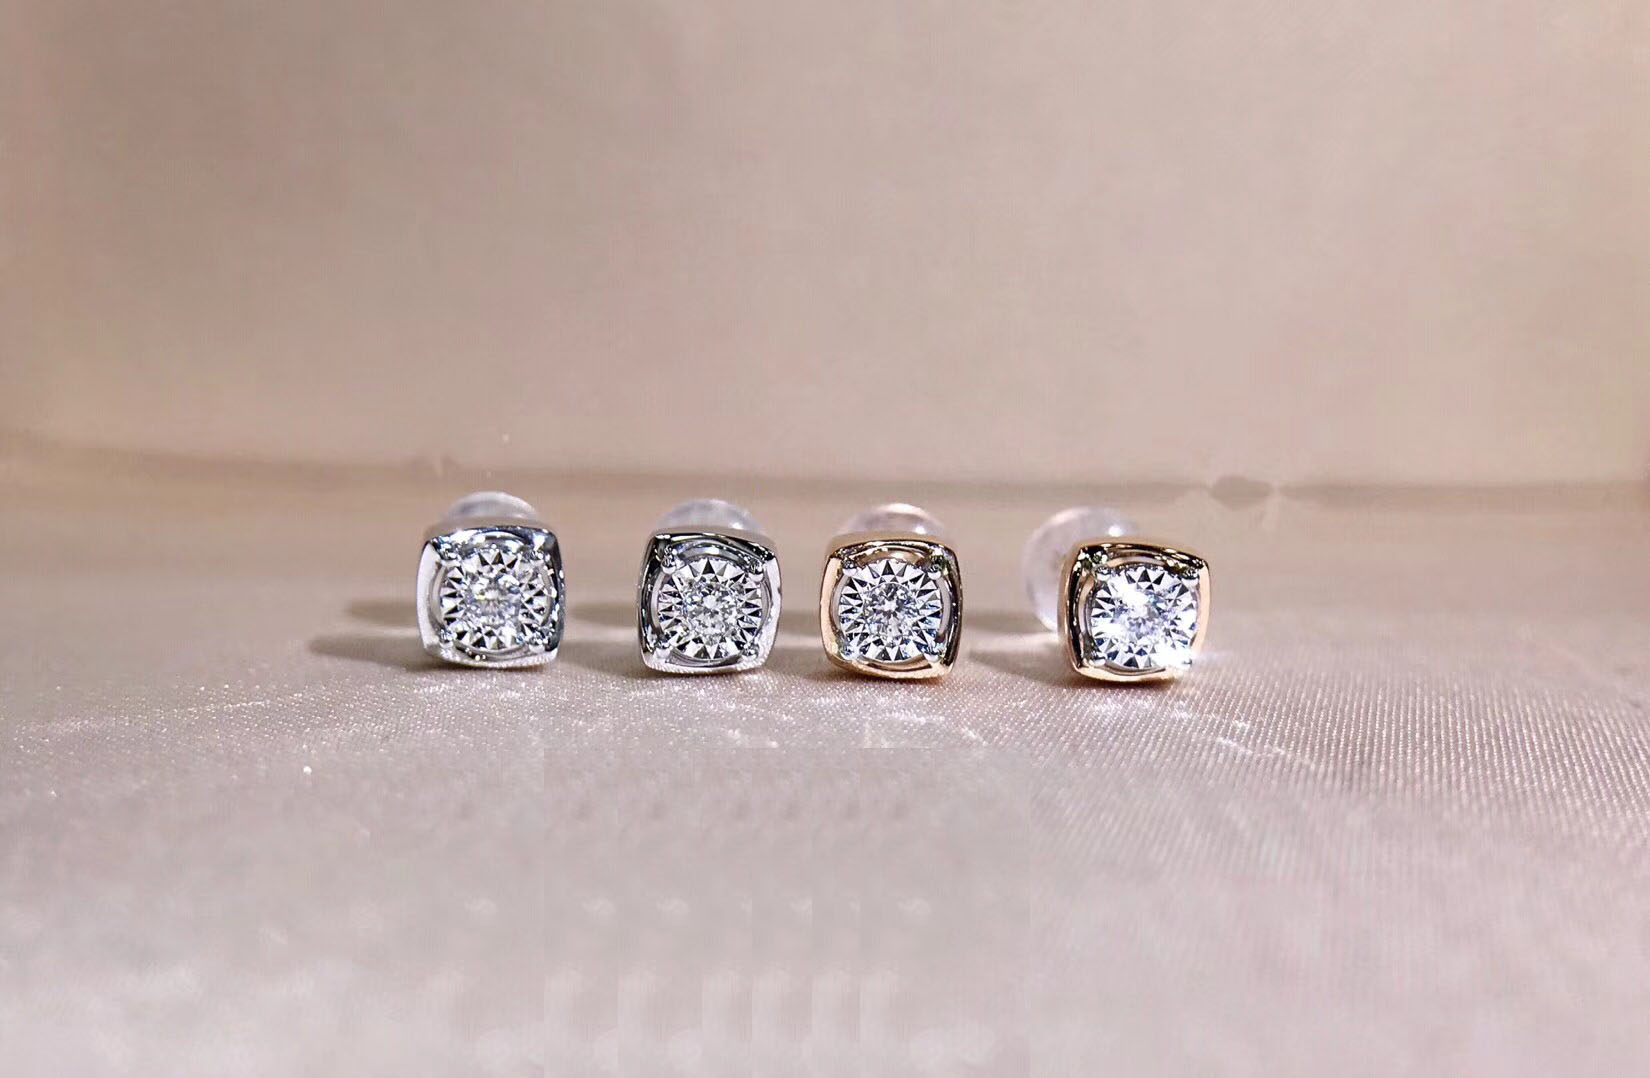 E00641-1 Diamond Earrings in 18k Gold/18k White Gold